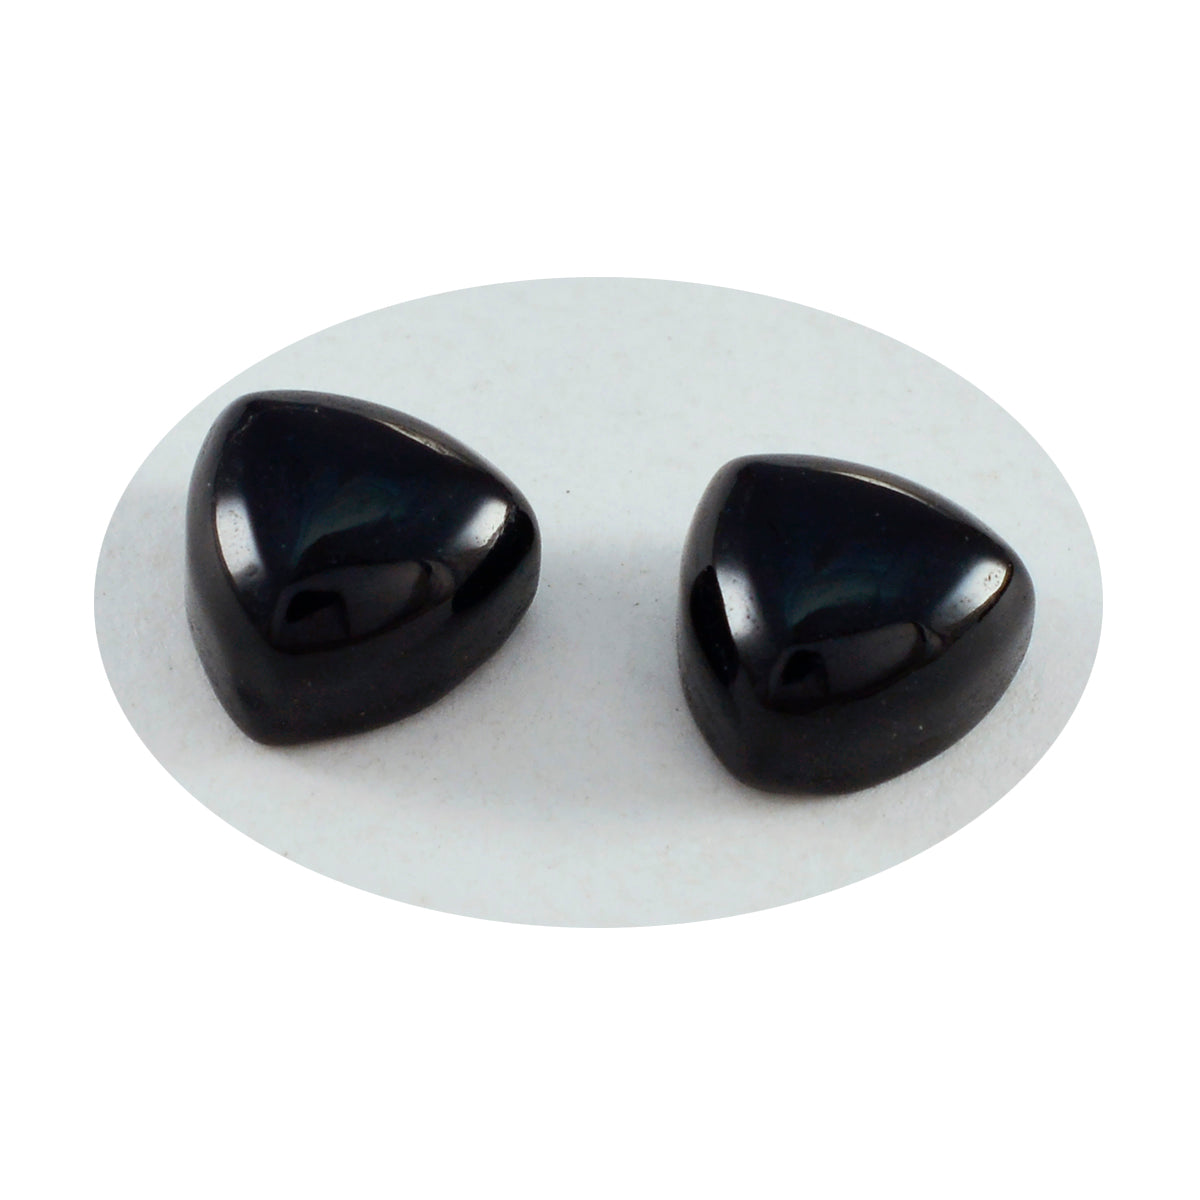 Riyogems 1PC Black Onyx Cabochon 10x10 mm Trillion Shape A+1 Quality Gemstone